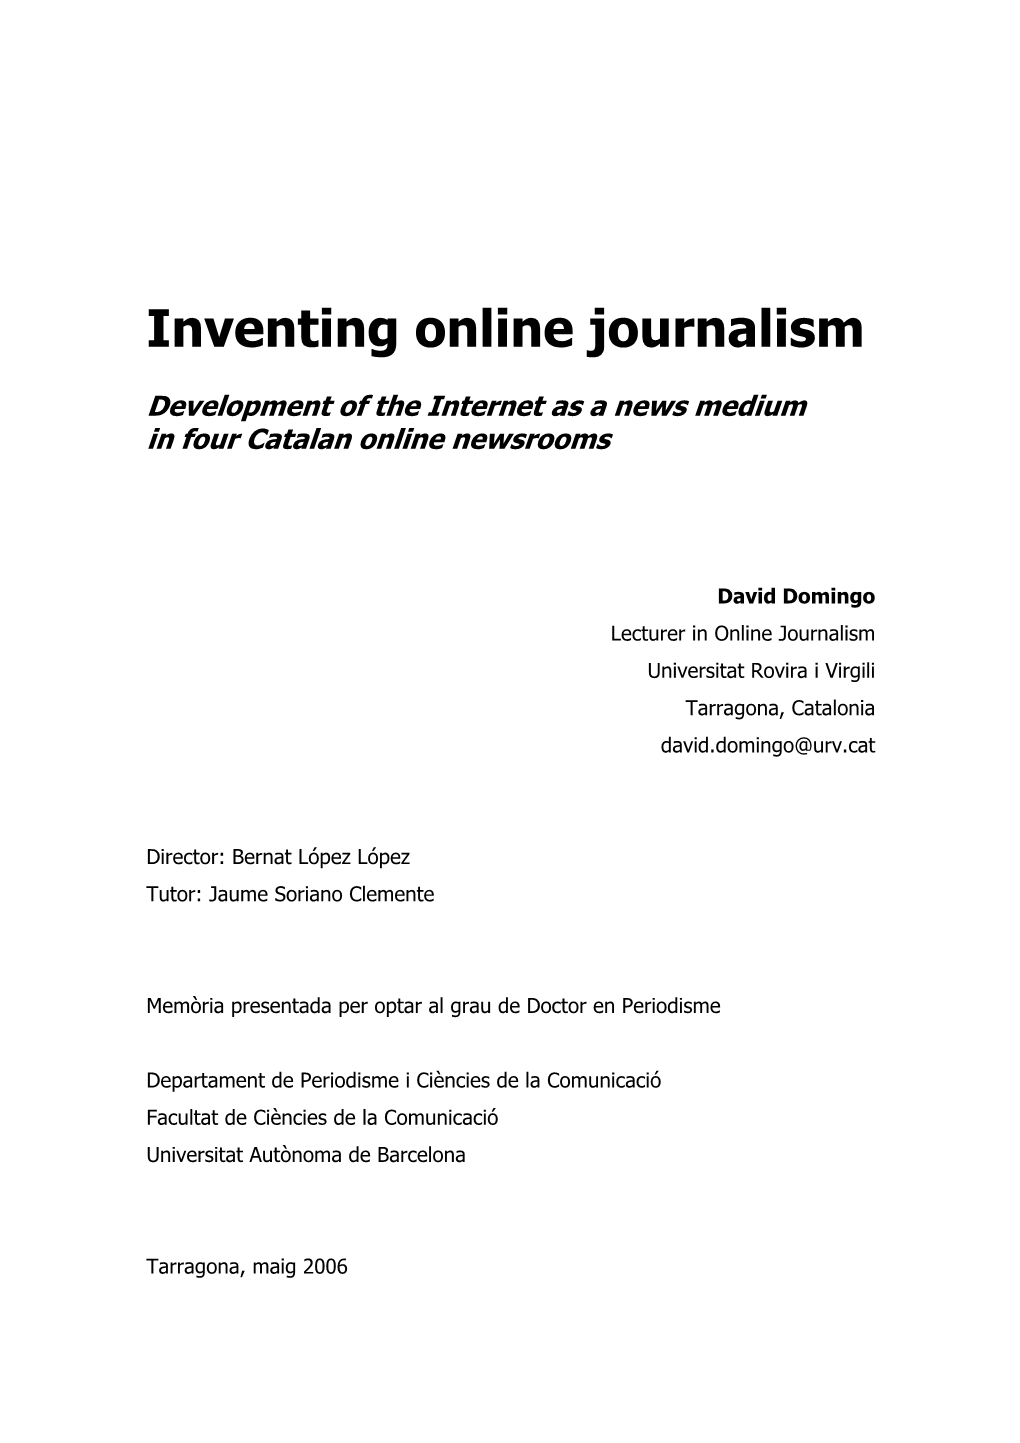 Inventing Online Journalism